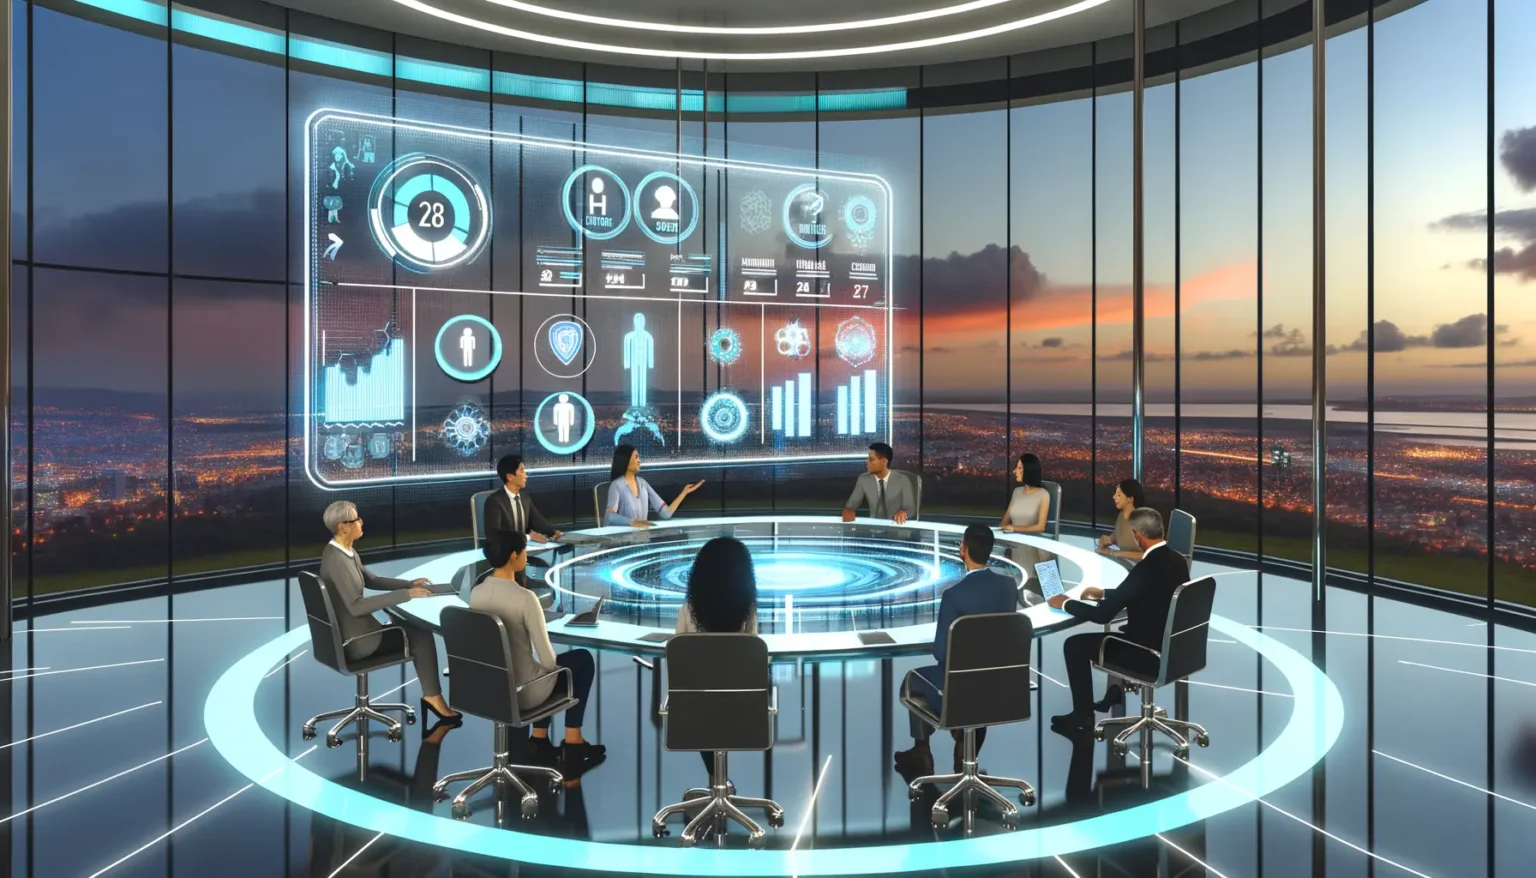 Eine Gruppe von Geschäftsleuten sitzt in einem hochmodernen Konferenzraum mit futuristischem Design und blickt auf interaktive digitale Displays mit Grafiken und Daten. Der Raum bietet durch bodentiefe Fenster einen Panoramablick auf eine beleuchtete Stadtlandschaft bei Dämmerung.